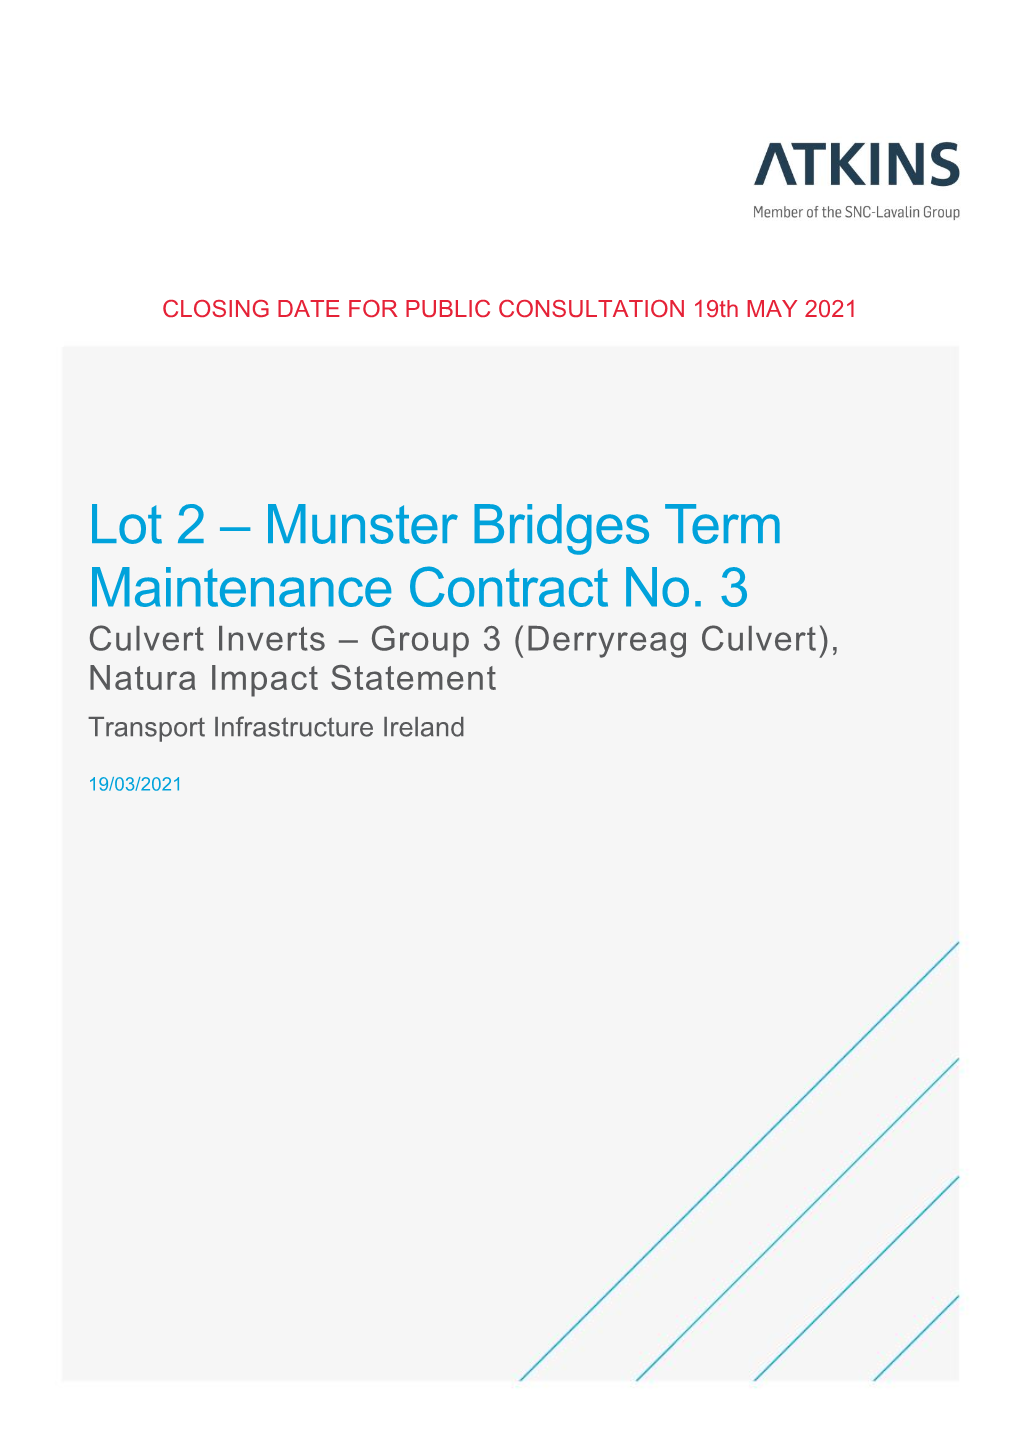 (Derryreag Culvert), Natura Impact Statement Transport Infrastructure Ireland